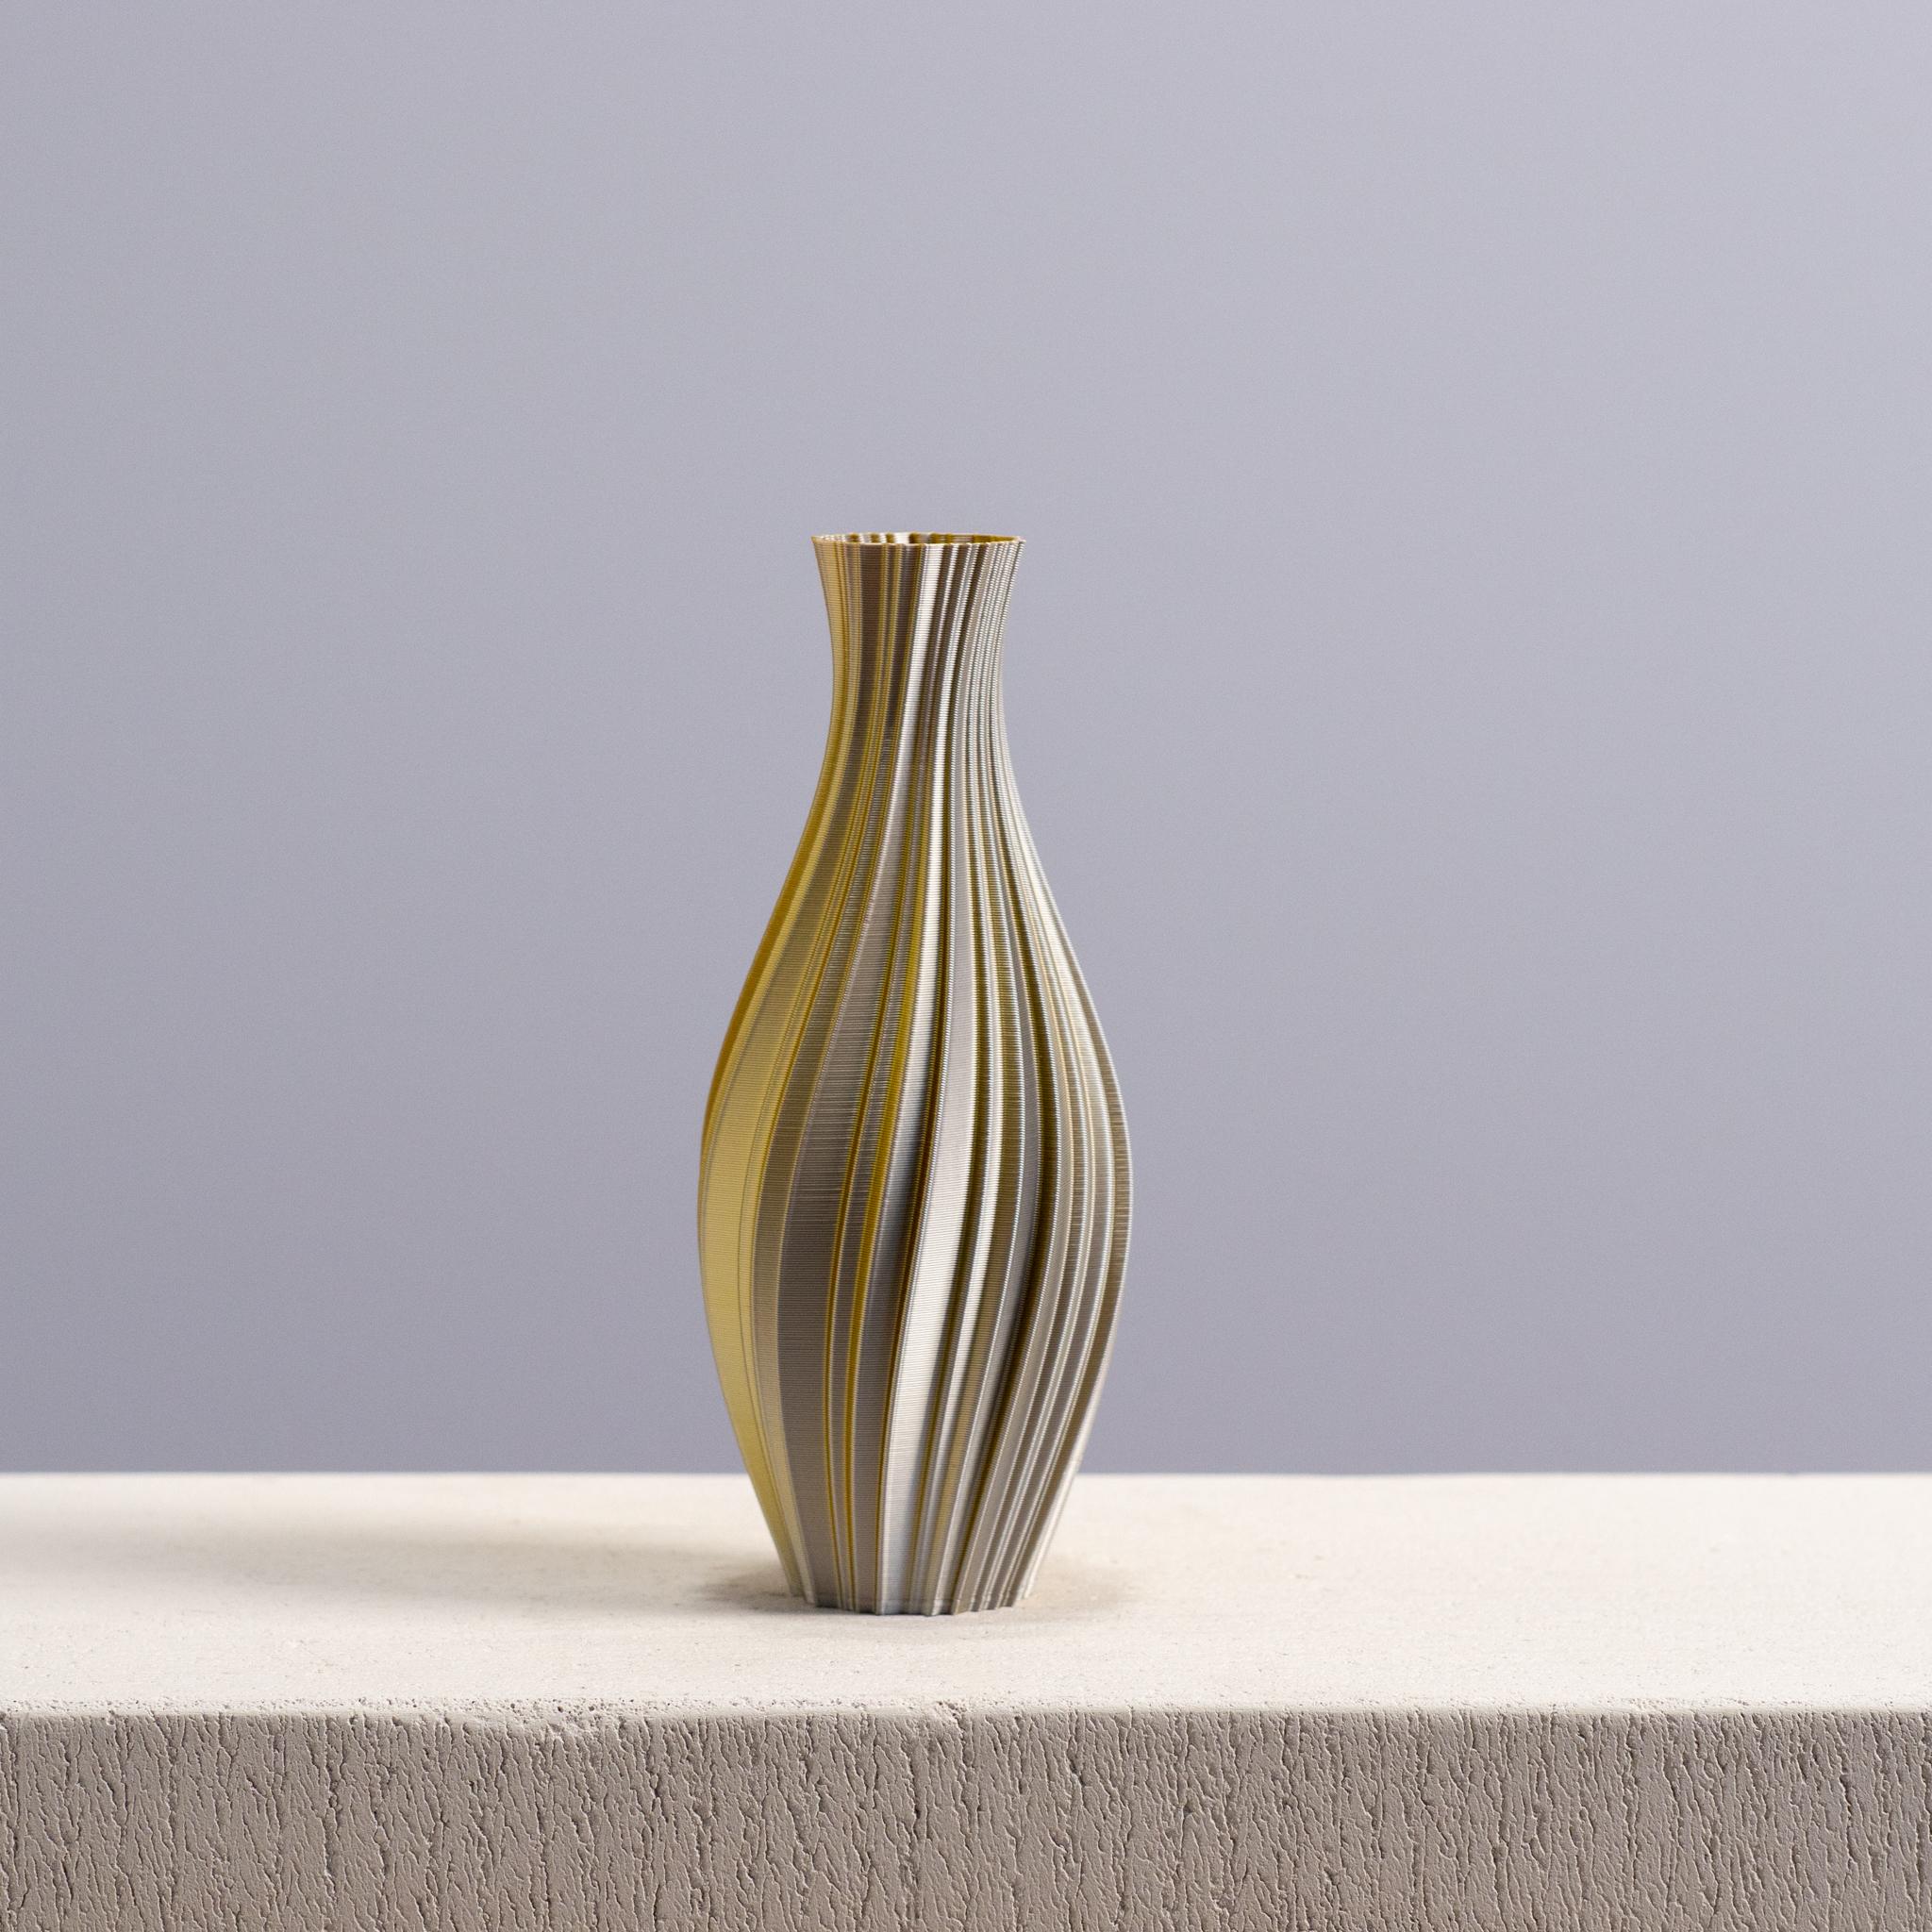  Spiraled Vase, Vase Mode, Slimprint  3d model